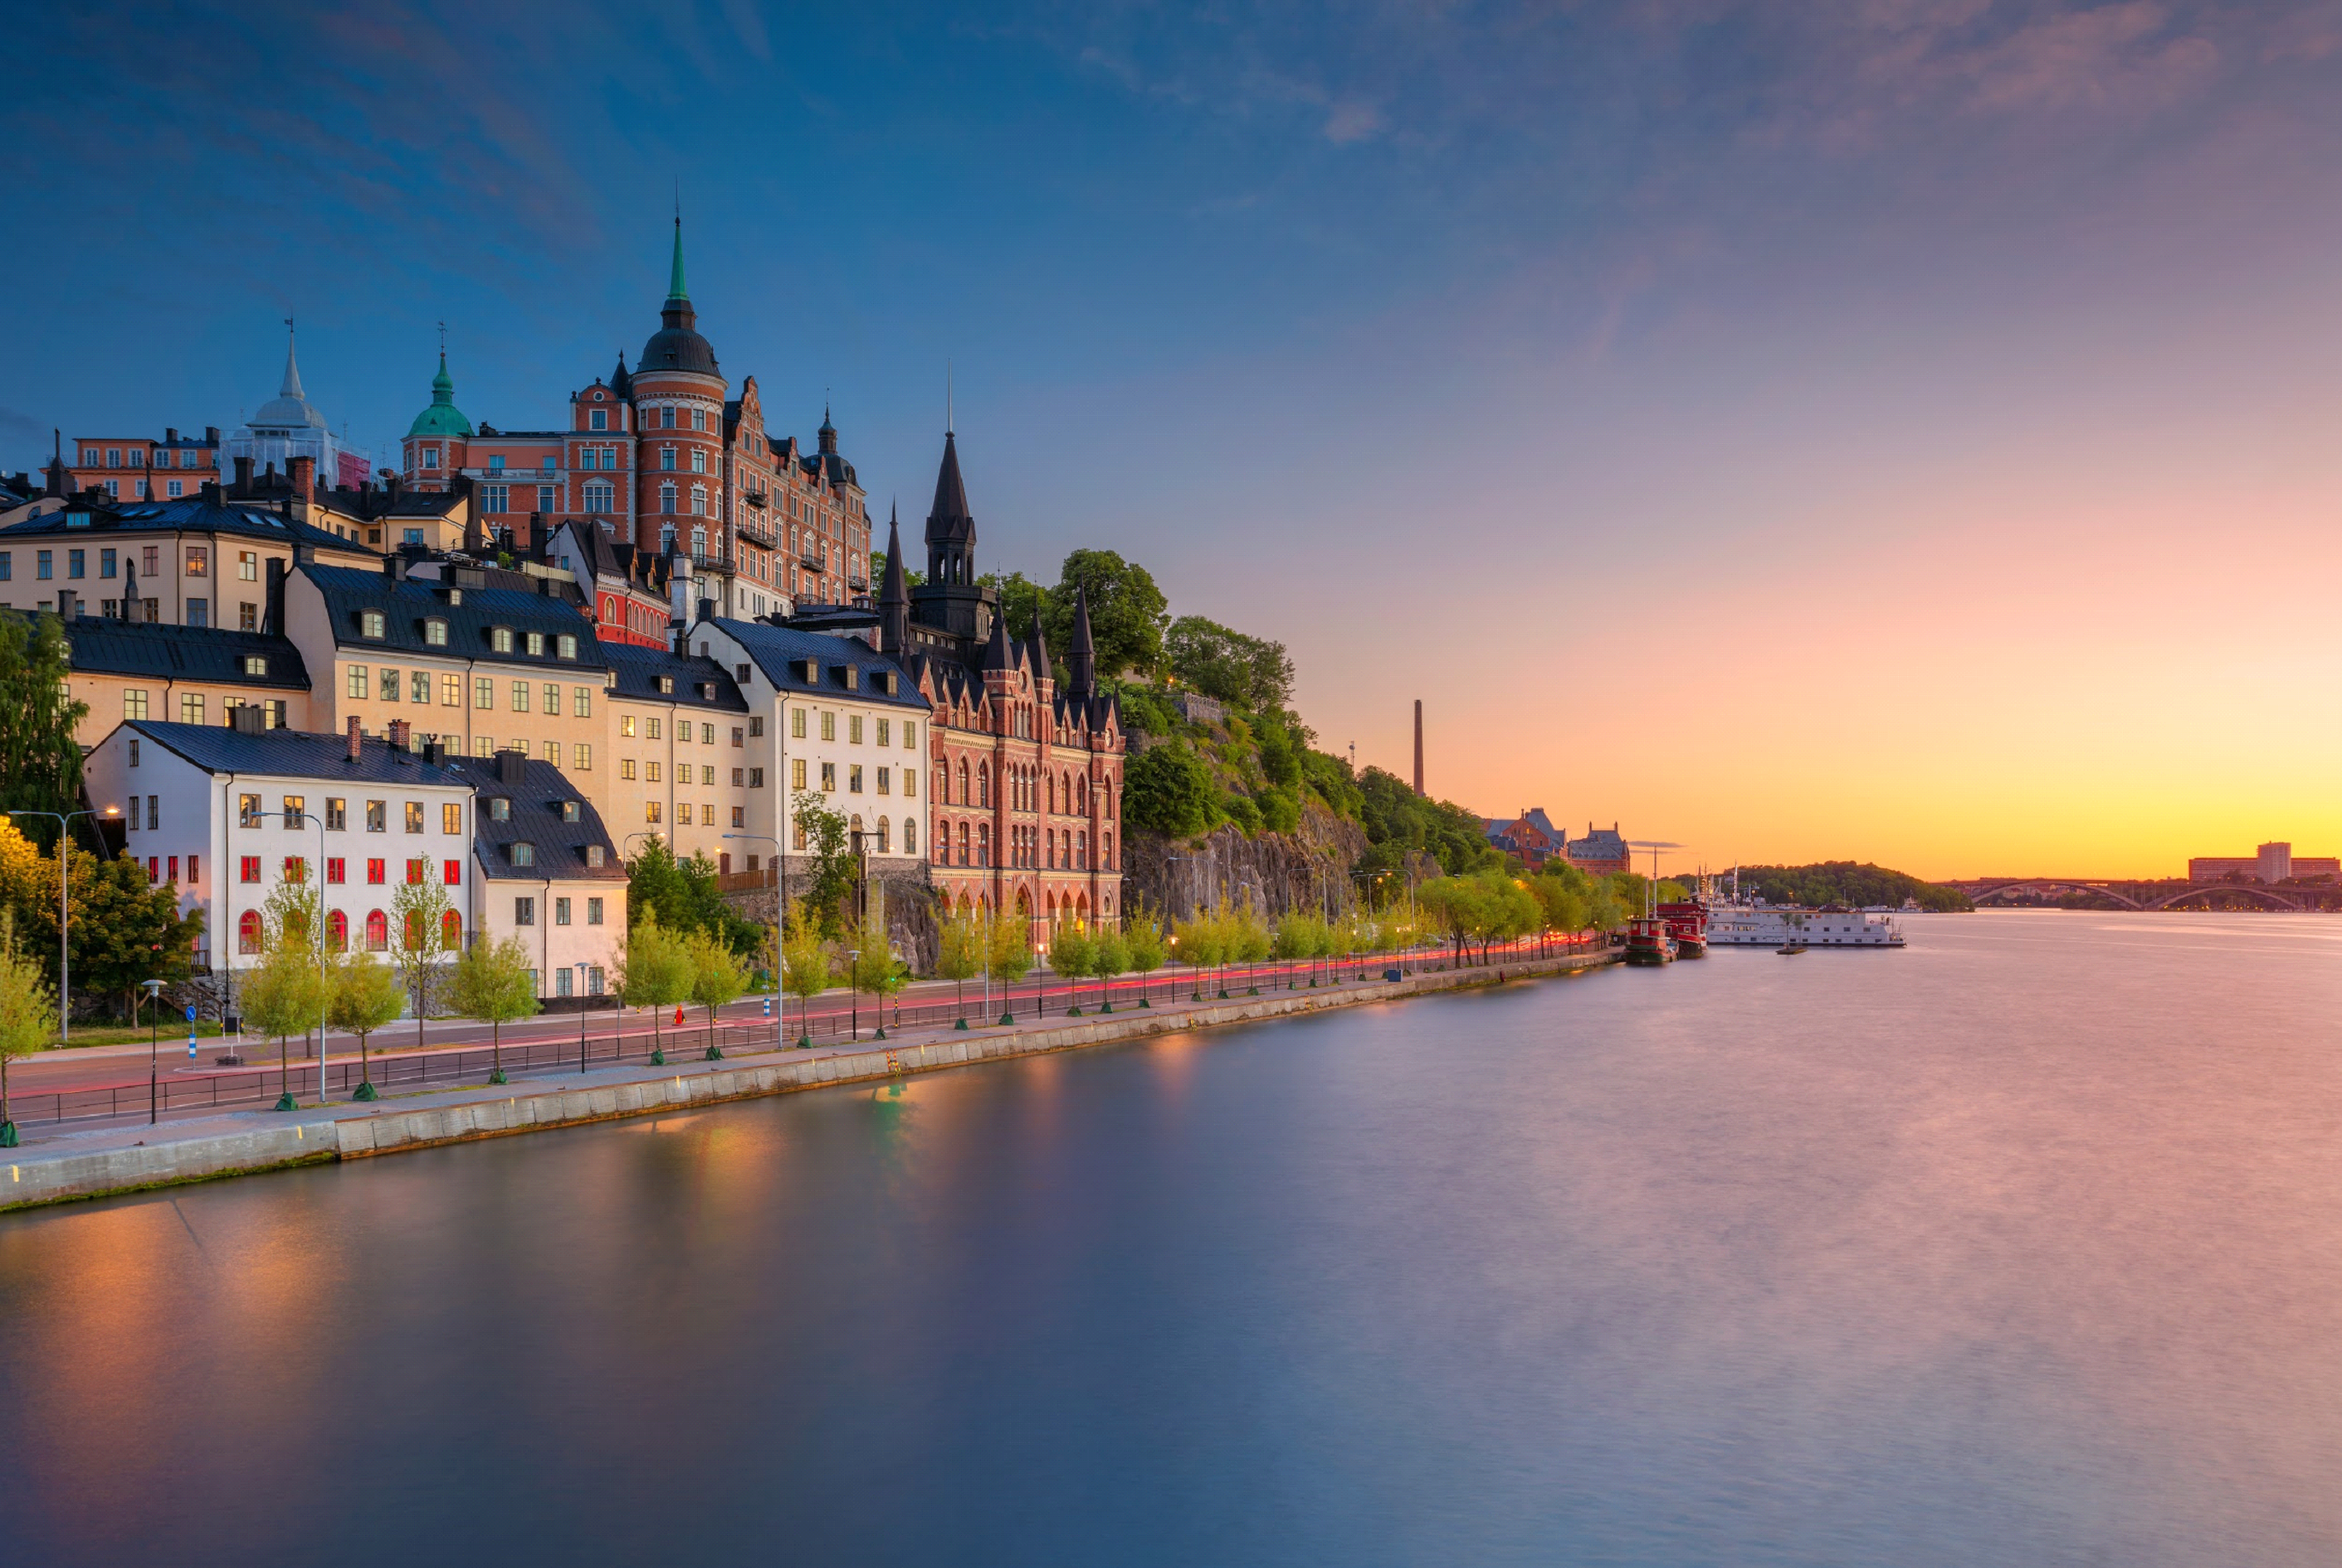 Praca za granicą – dlaczego warto wyjechać do Szwecji?